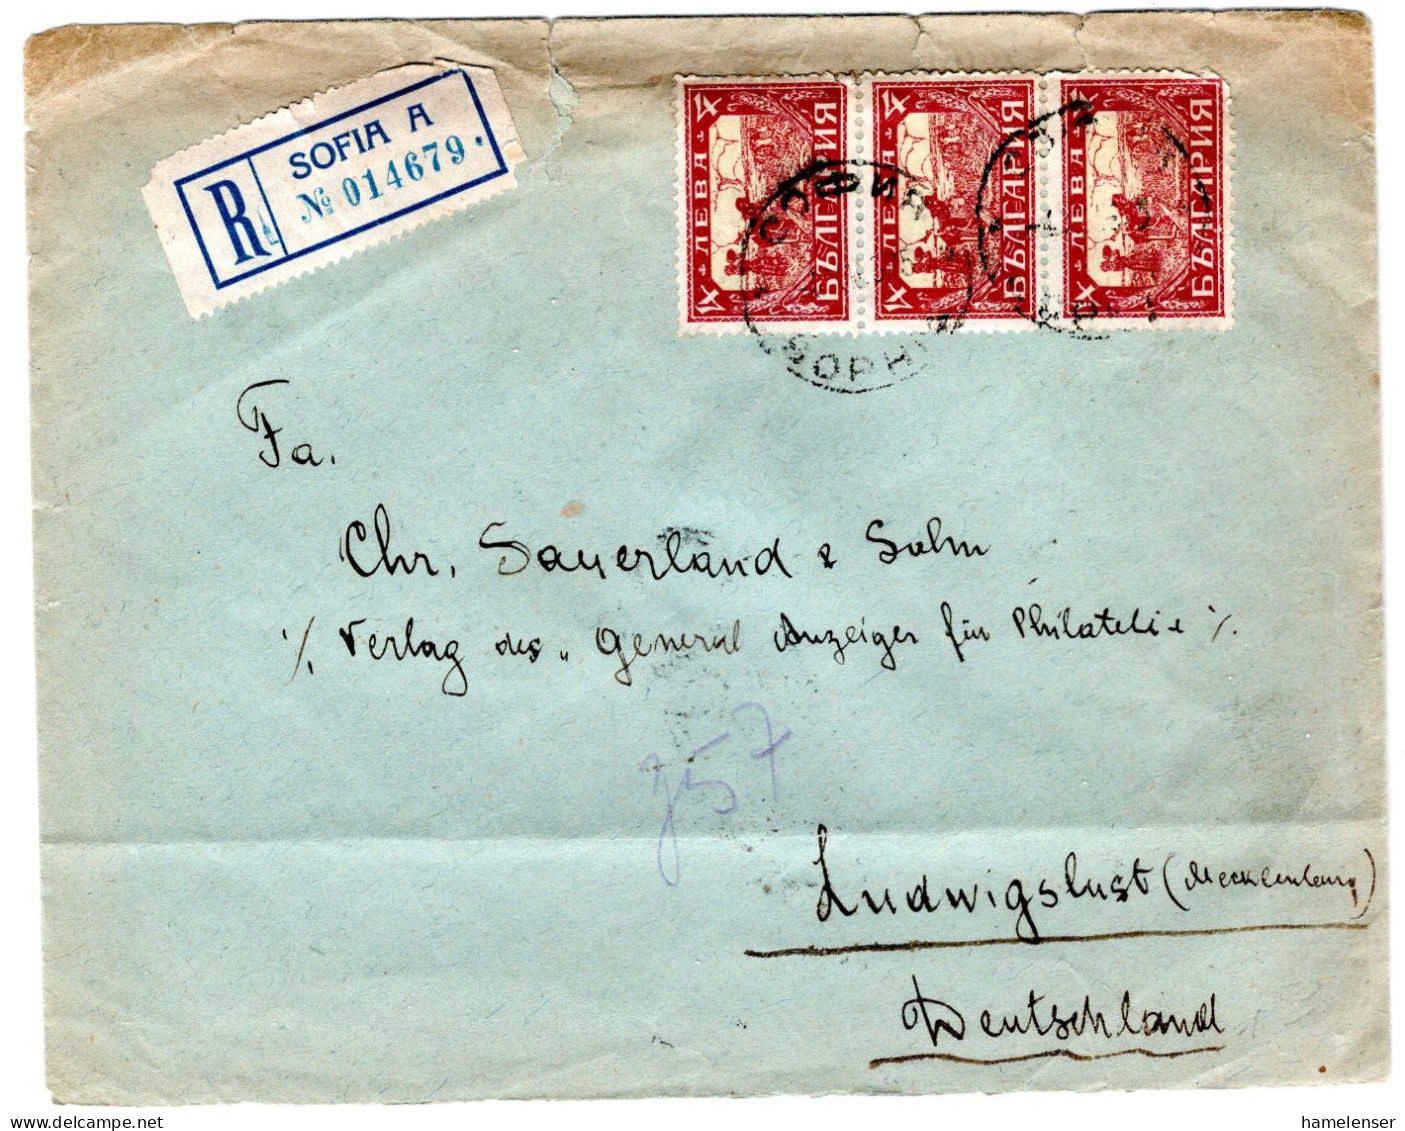 L64883 - Bulgarien - 1925 - 3@4L Landwirtschaft A R-Bf SOFIA -> LUDWIGSLUST (Deutschland), Kl Mgl - Lettres & Documents